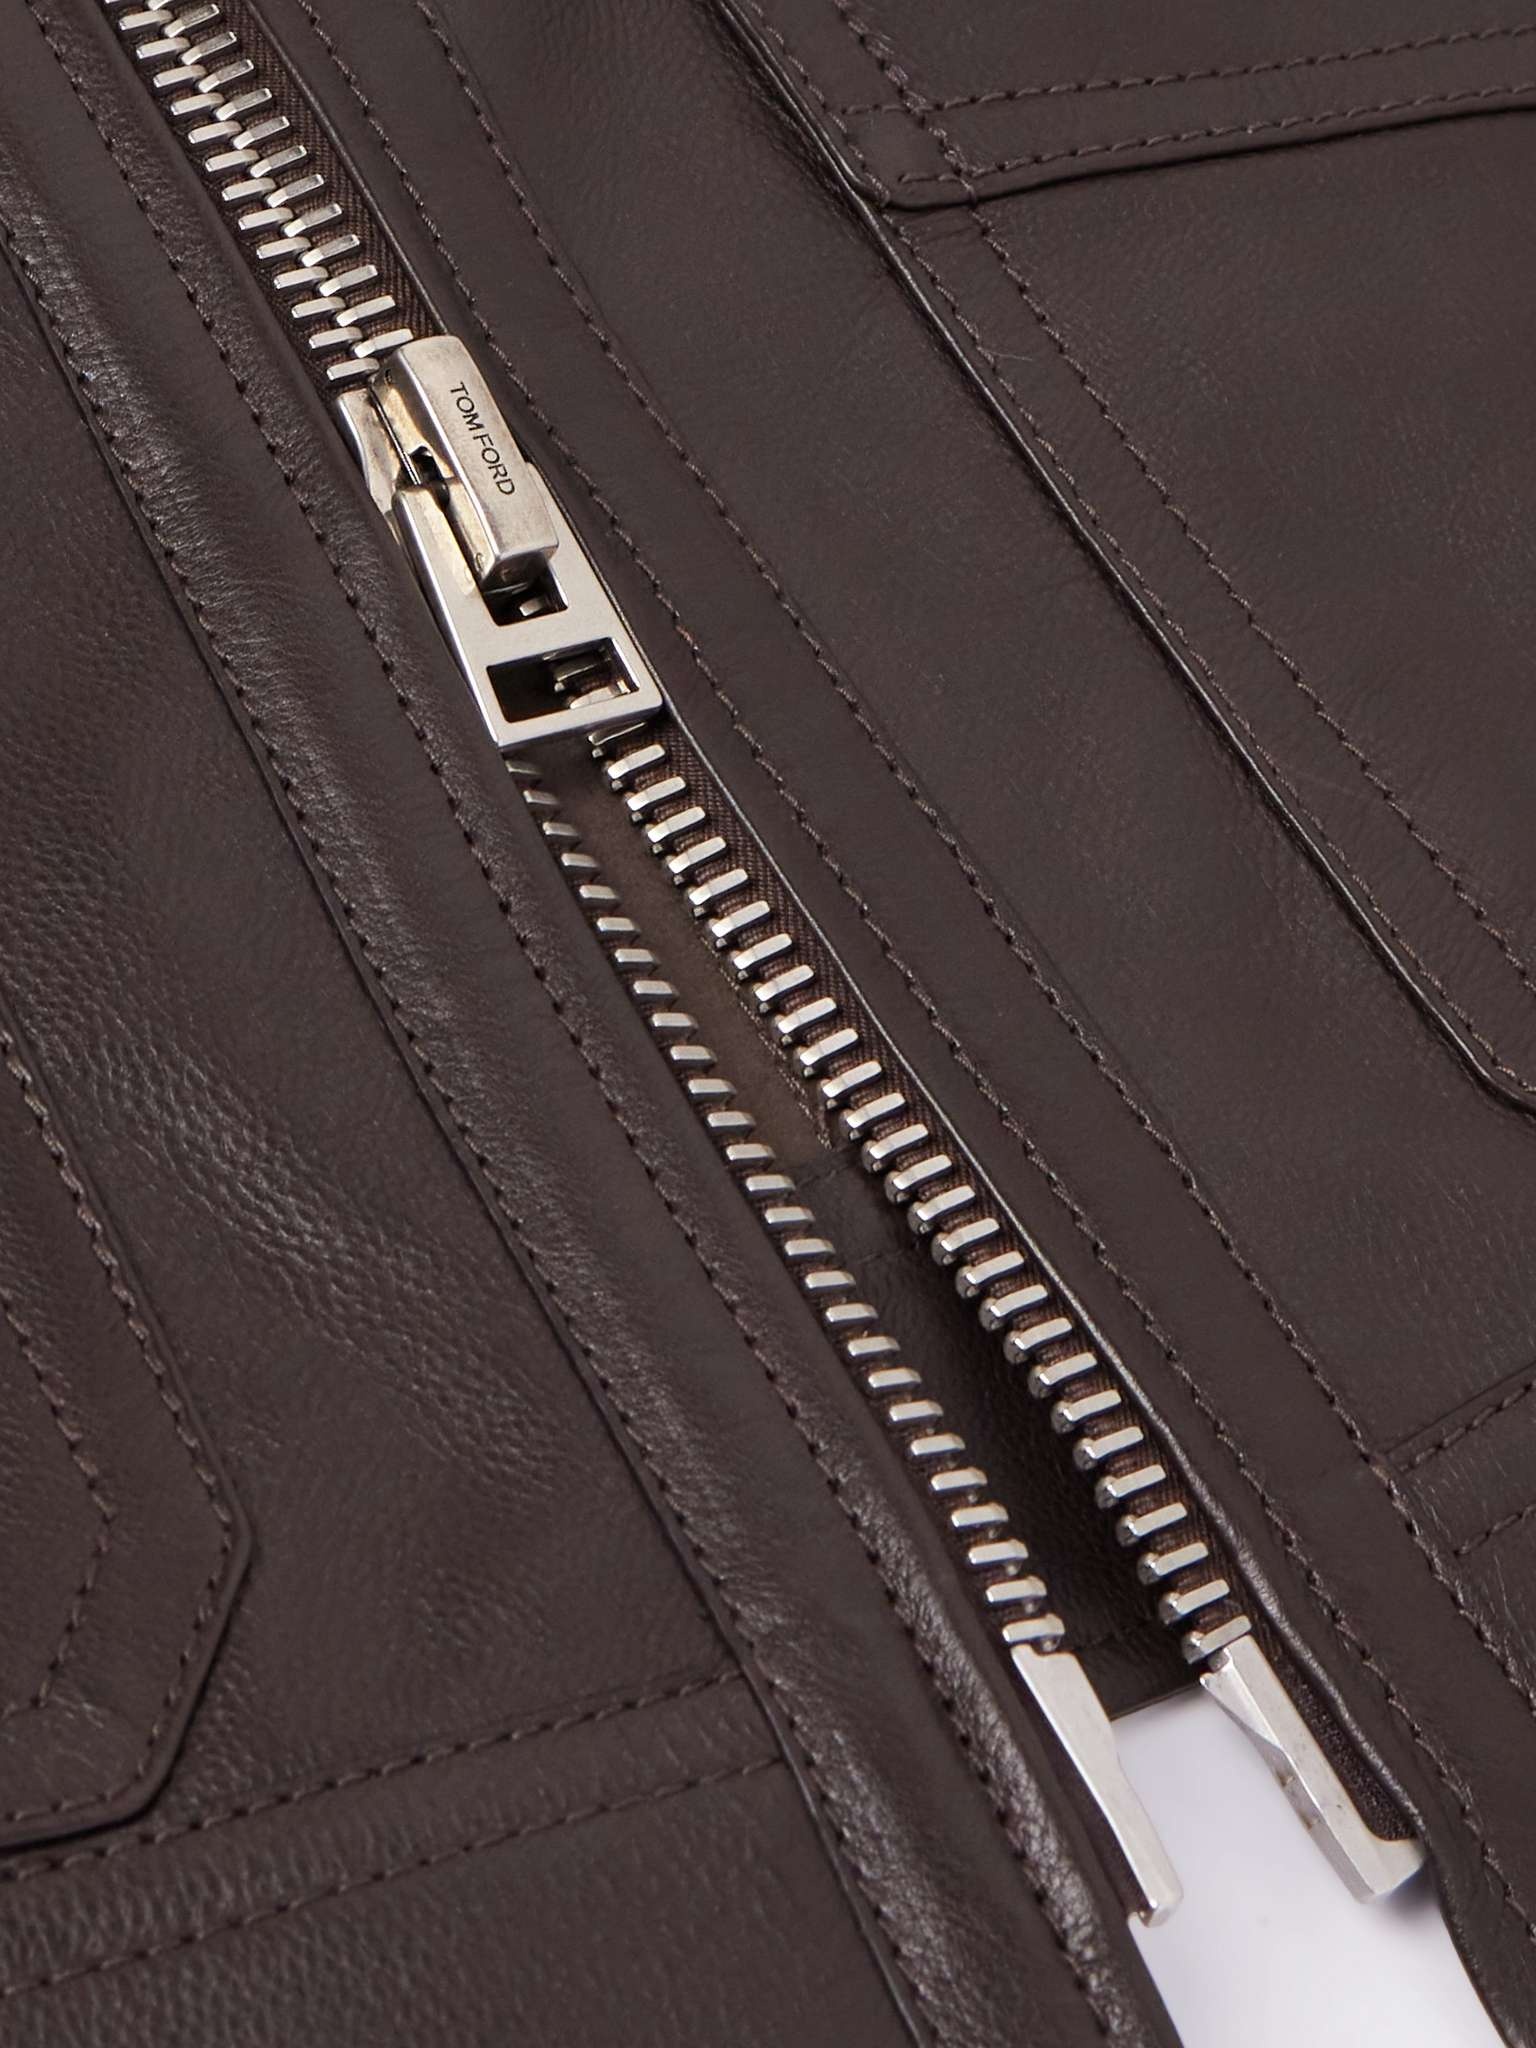 Leather Jacket - 3